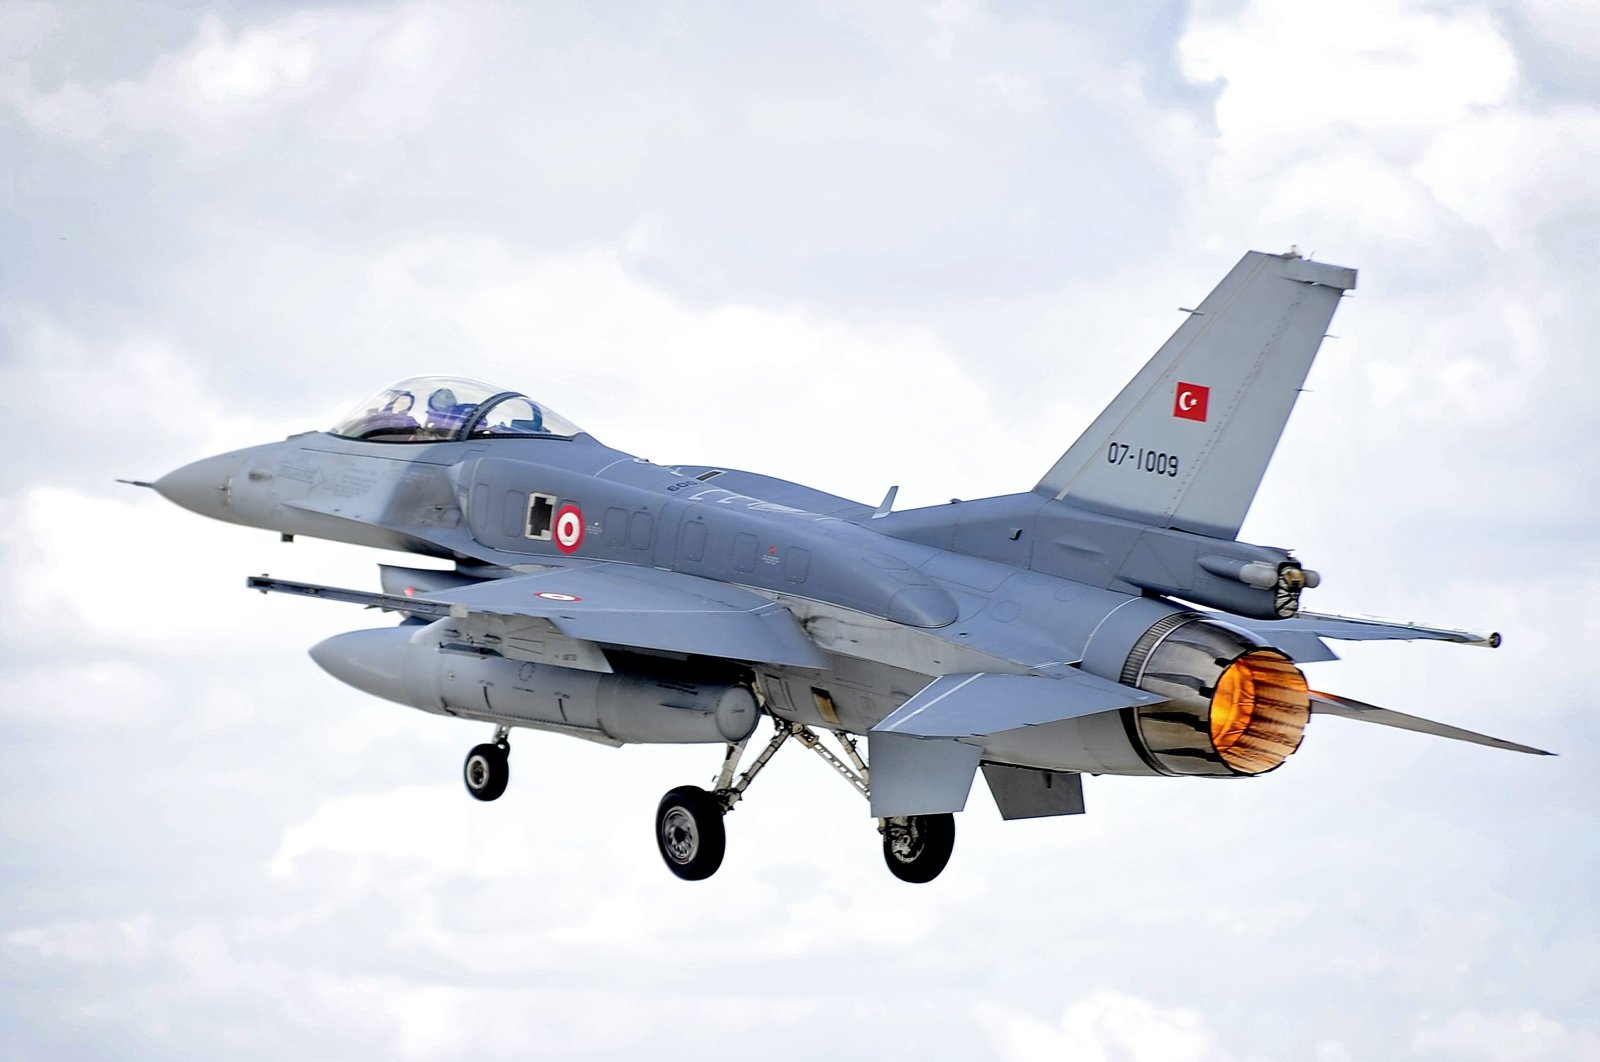 Η Τουρκία παίρνει όπως αναμενόταν τα F-16-Το σχόλιο Κοτζιά